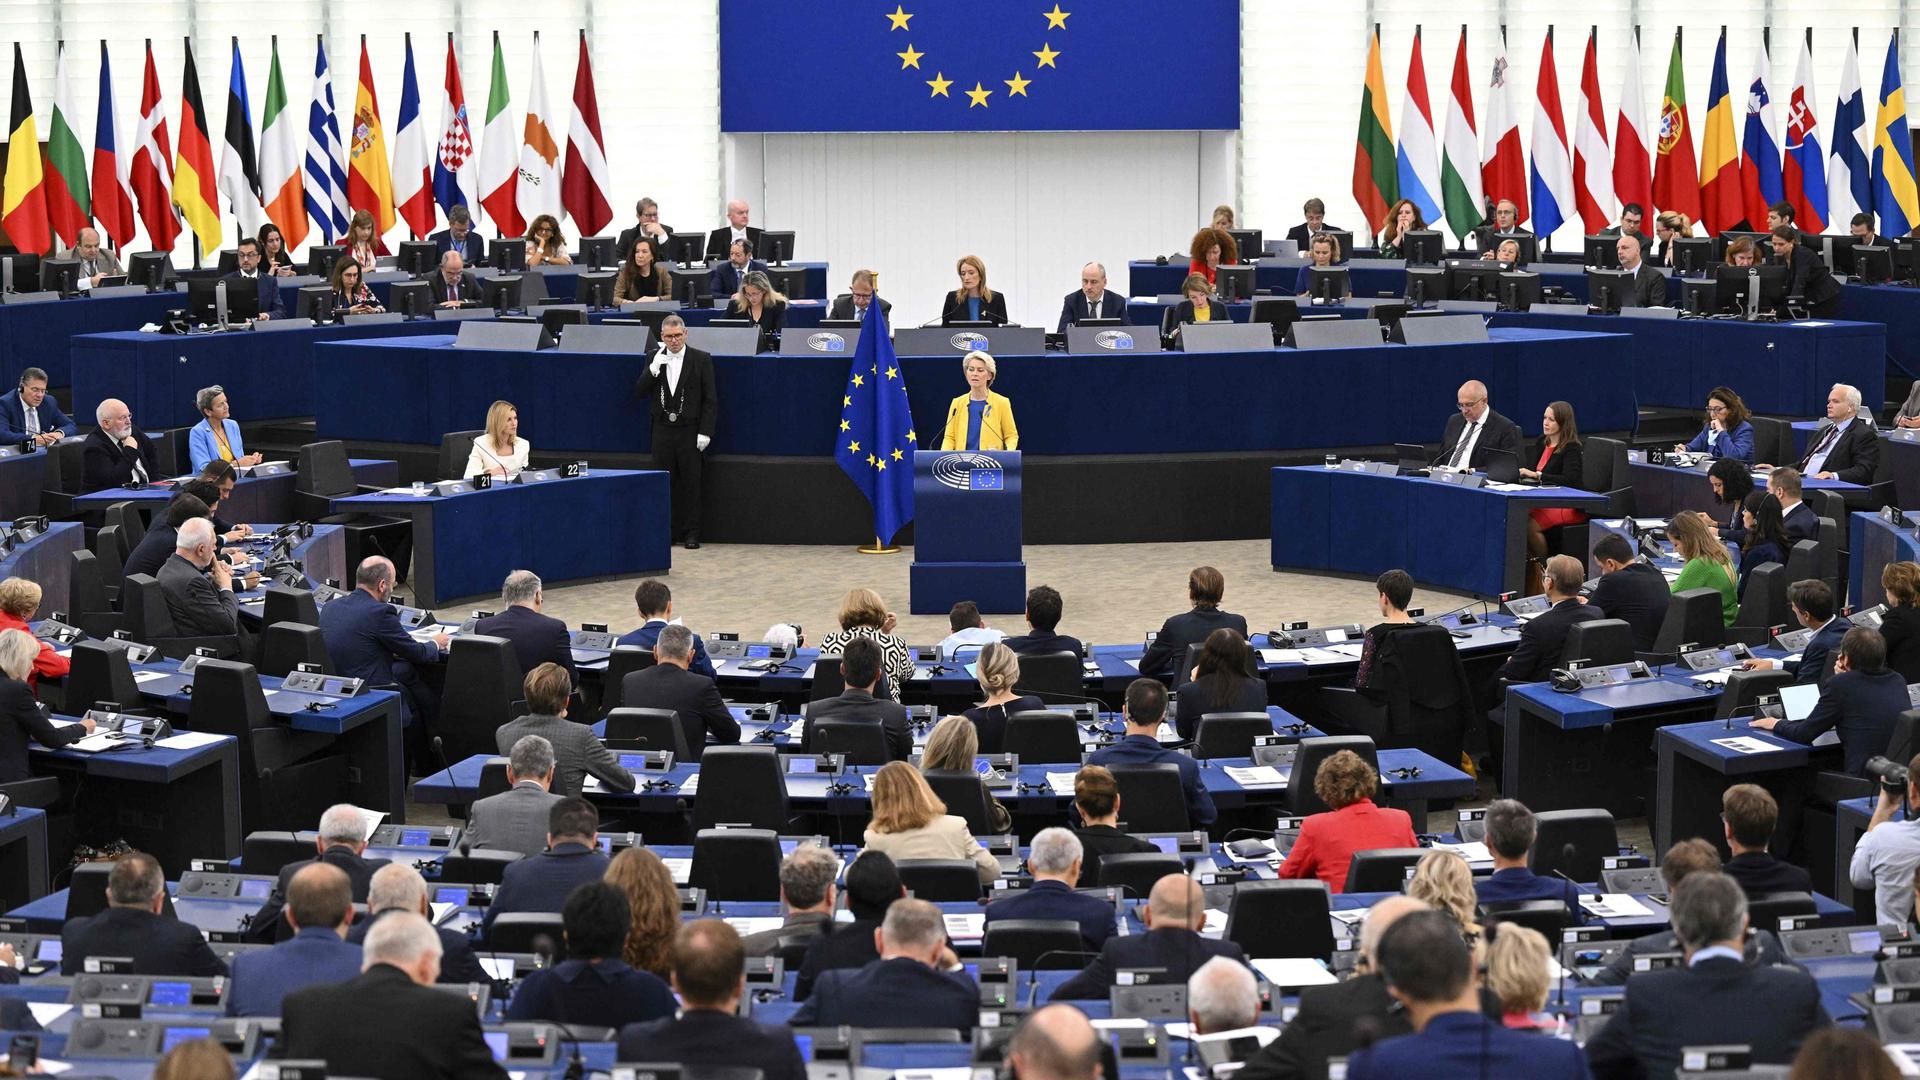 La présidente de la Commission européenne Ursula von der Leyen s'est exprimée devant le Parlement européen de Strasbourg ce mercredi 14 septembre.